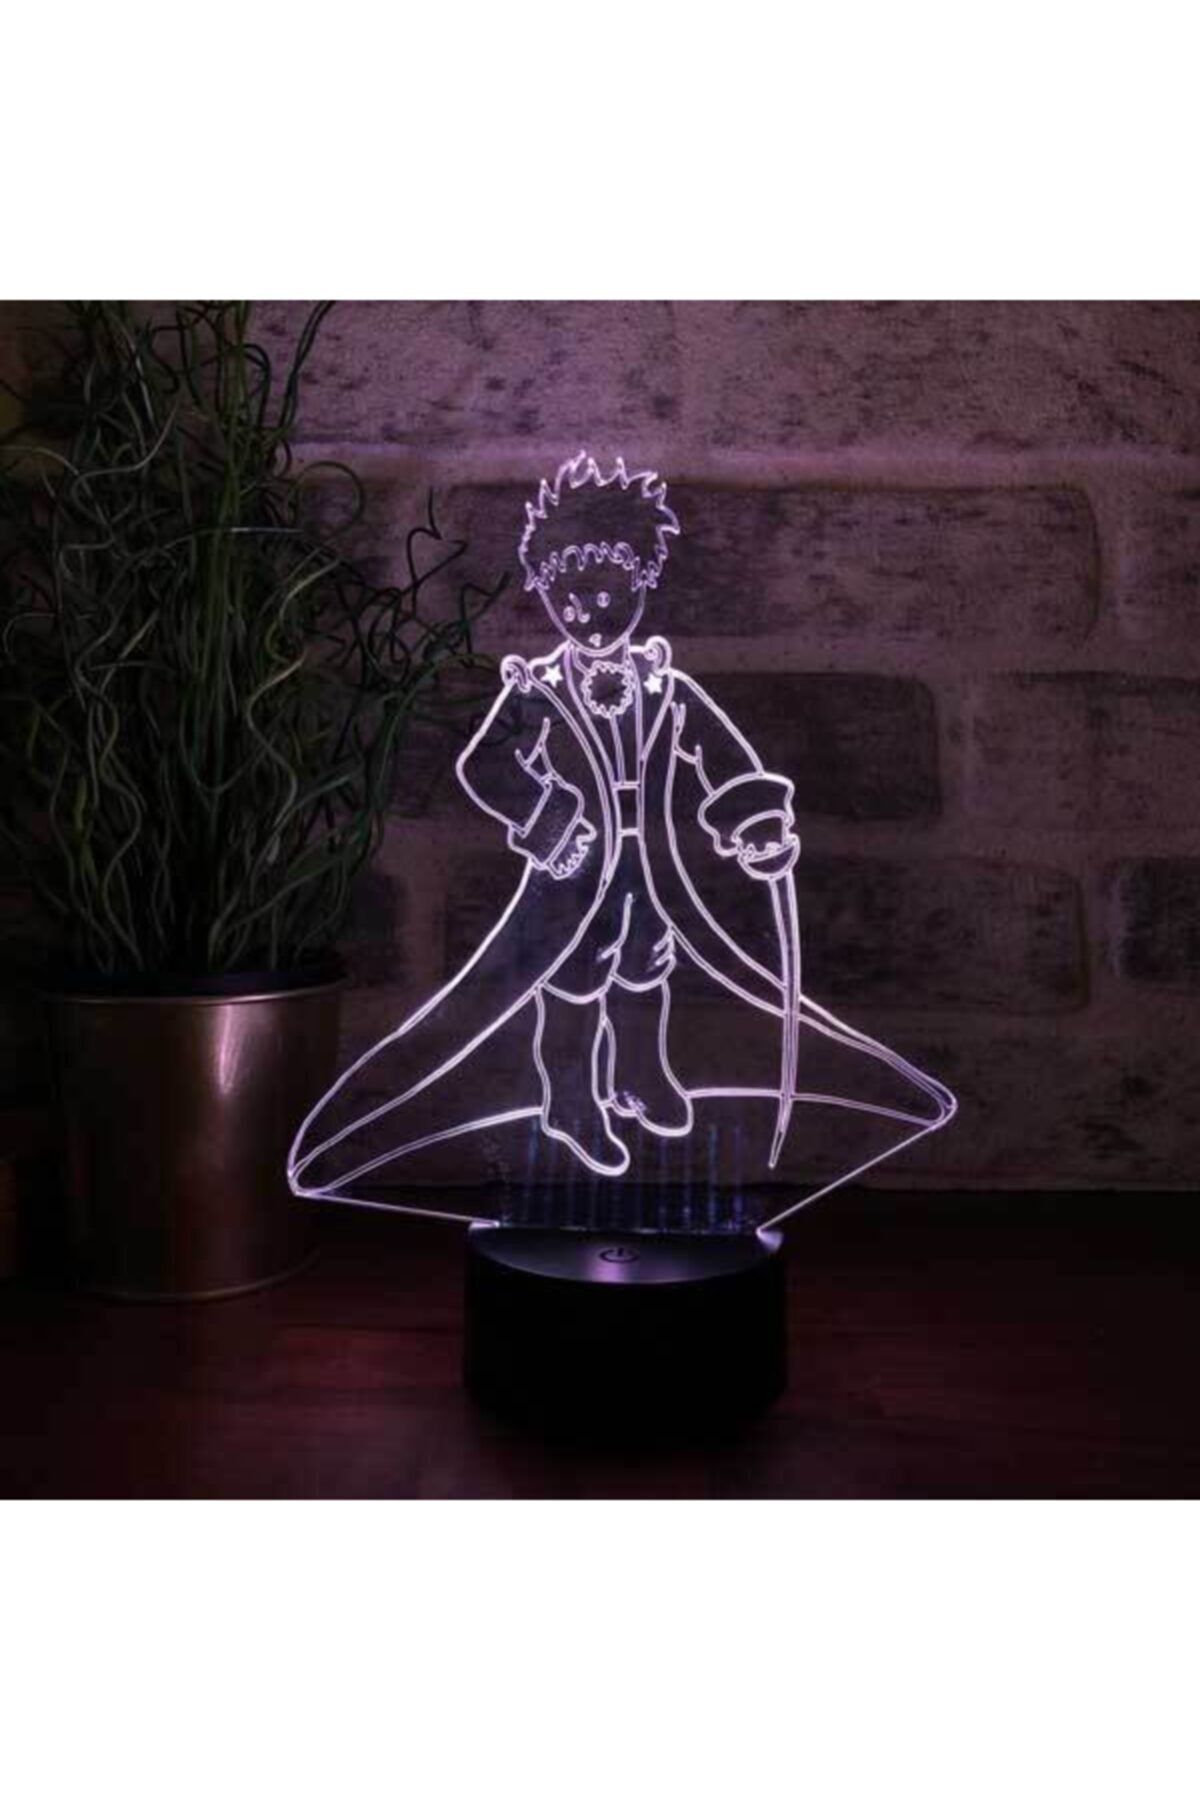 BY-LAMP Küçük Prens Figürlü Dekoratif Hediye Led Masa Lambası | 7 Işık Rengi | Siyah Taban